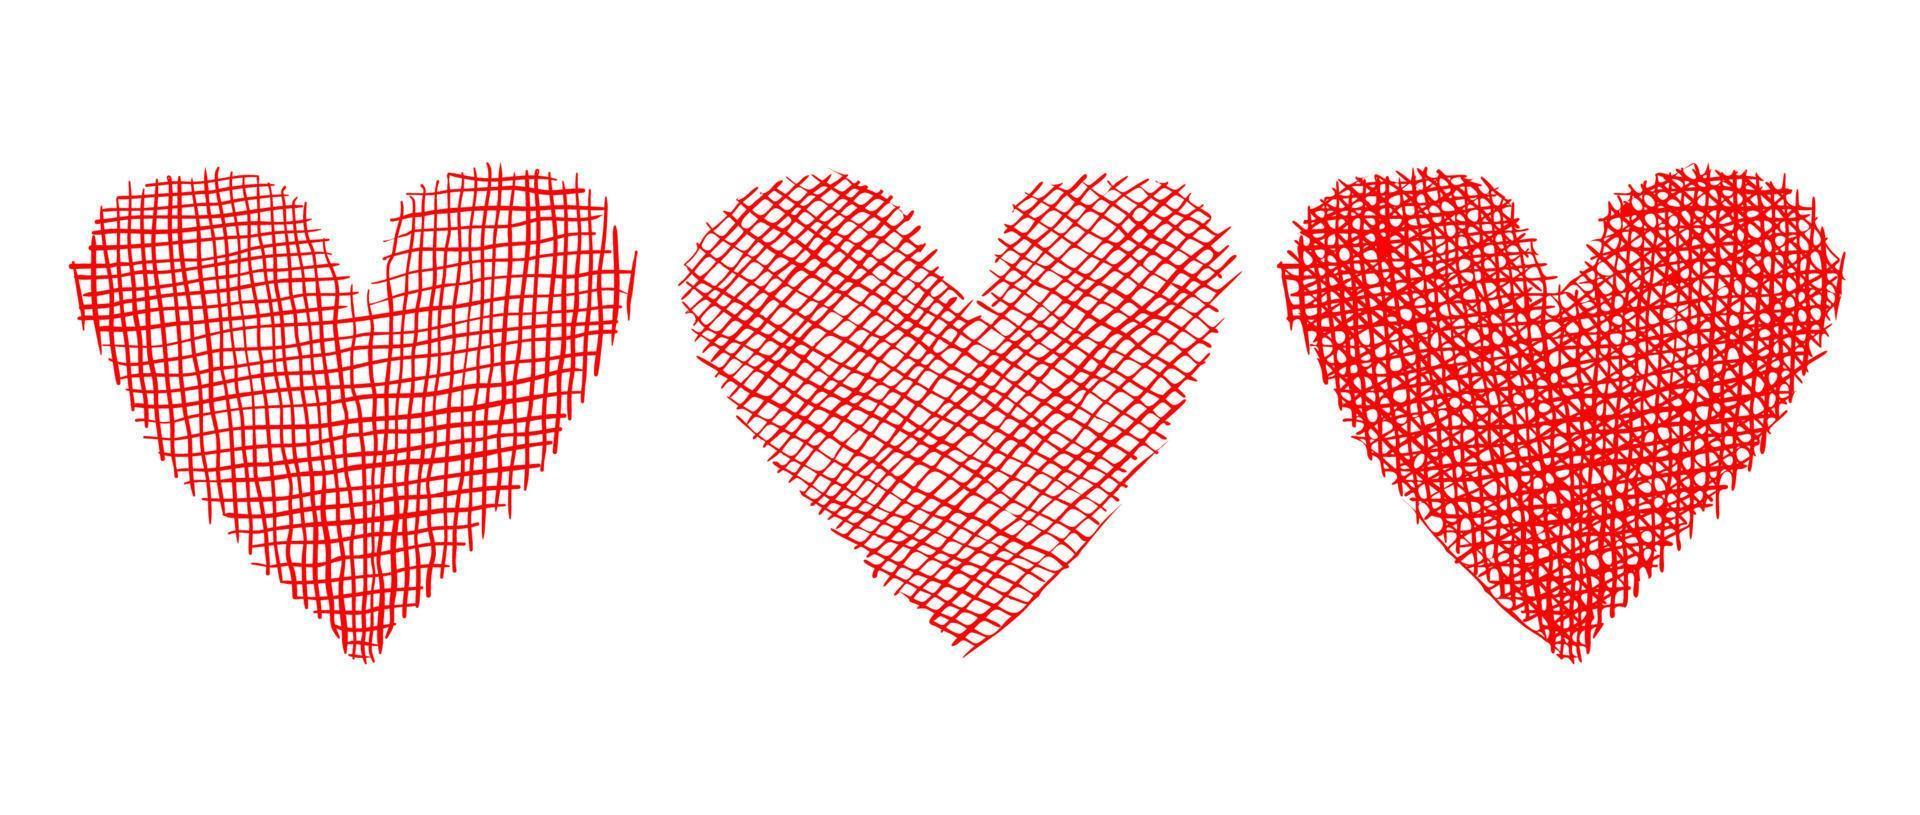 illustration vectorielle de coeurs rouges dans un style grunge pour la saint valentin. vecteur